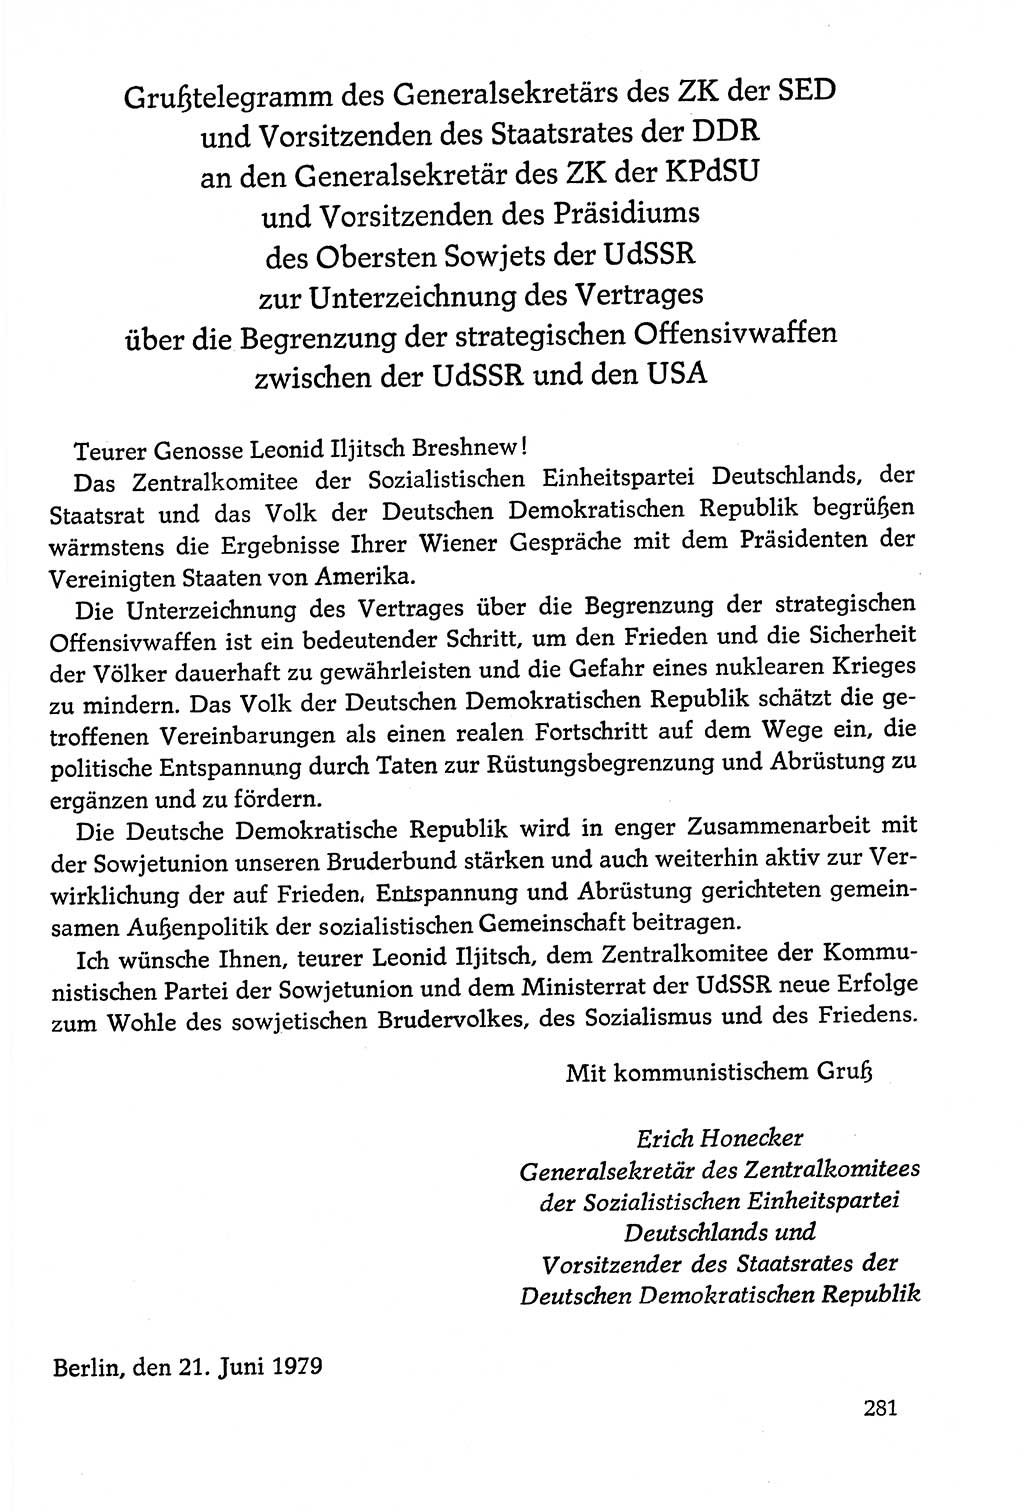 Dokumente der Sozialistischen Einheitspartei Deutschlands (SED) [Deutsche Demokratische Republik (DDR)] 1978-1979, Seite 281 (Dok. SED DDR 1978-1979, S. 281)